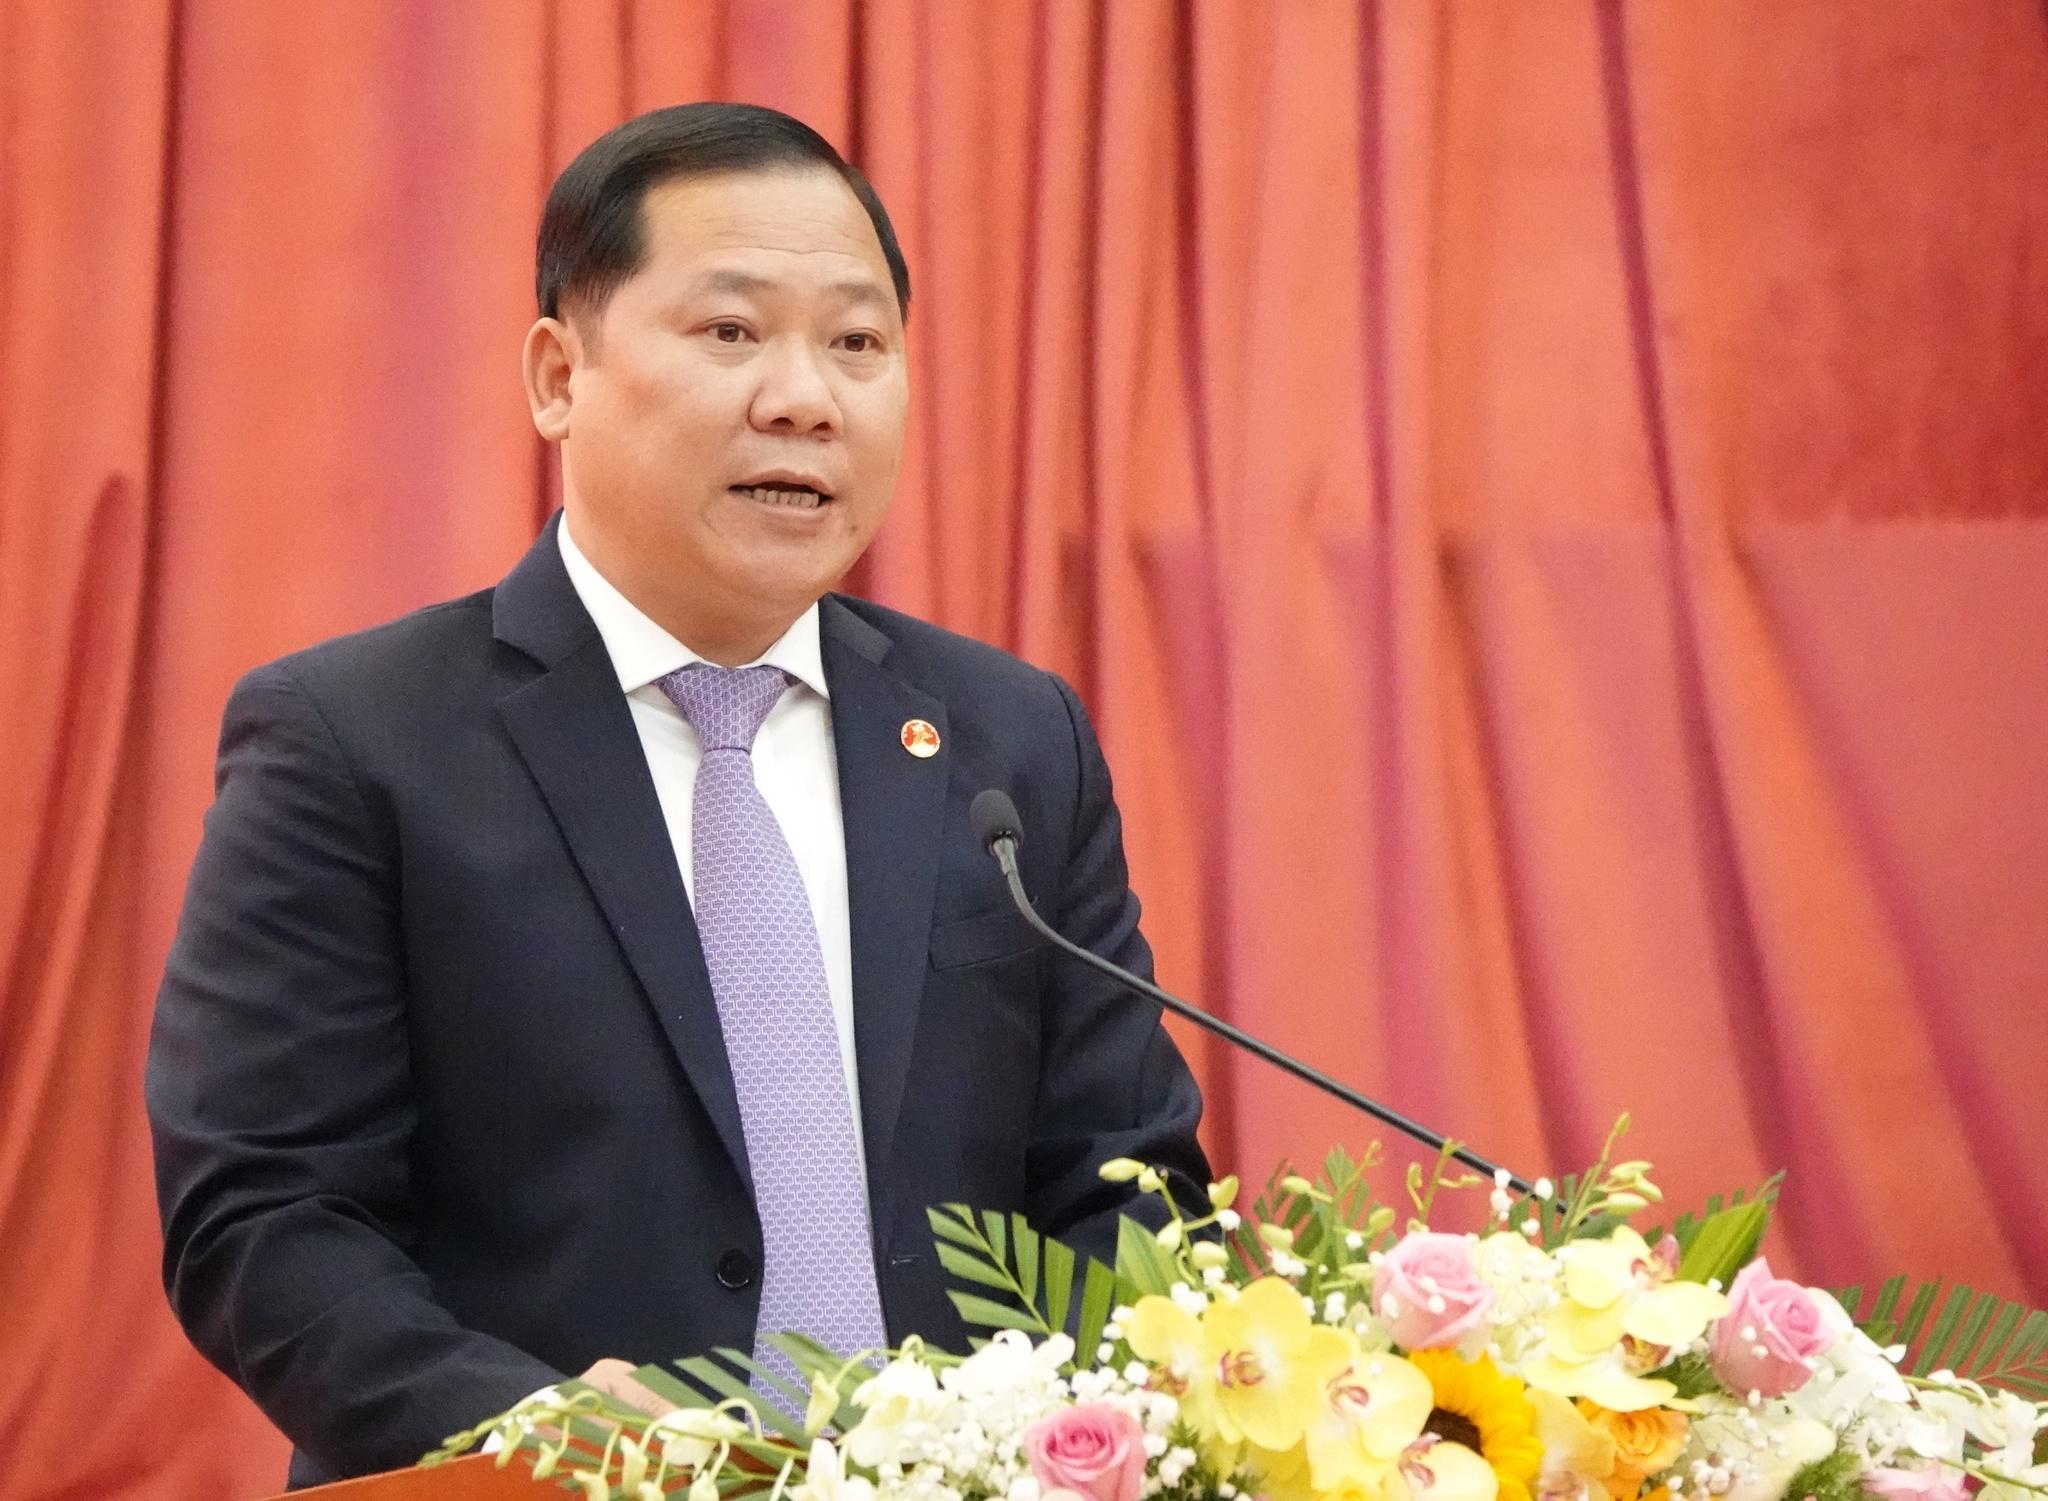 Chủ tịch nước Nguyễn Xuân Phúc: Tỉnh Bình Định cần mục tiêu phát triển bền vững - ảnh 2